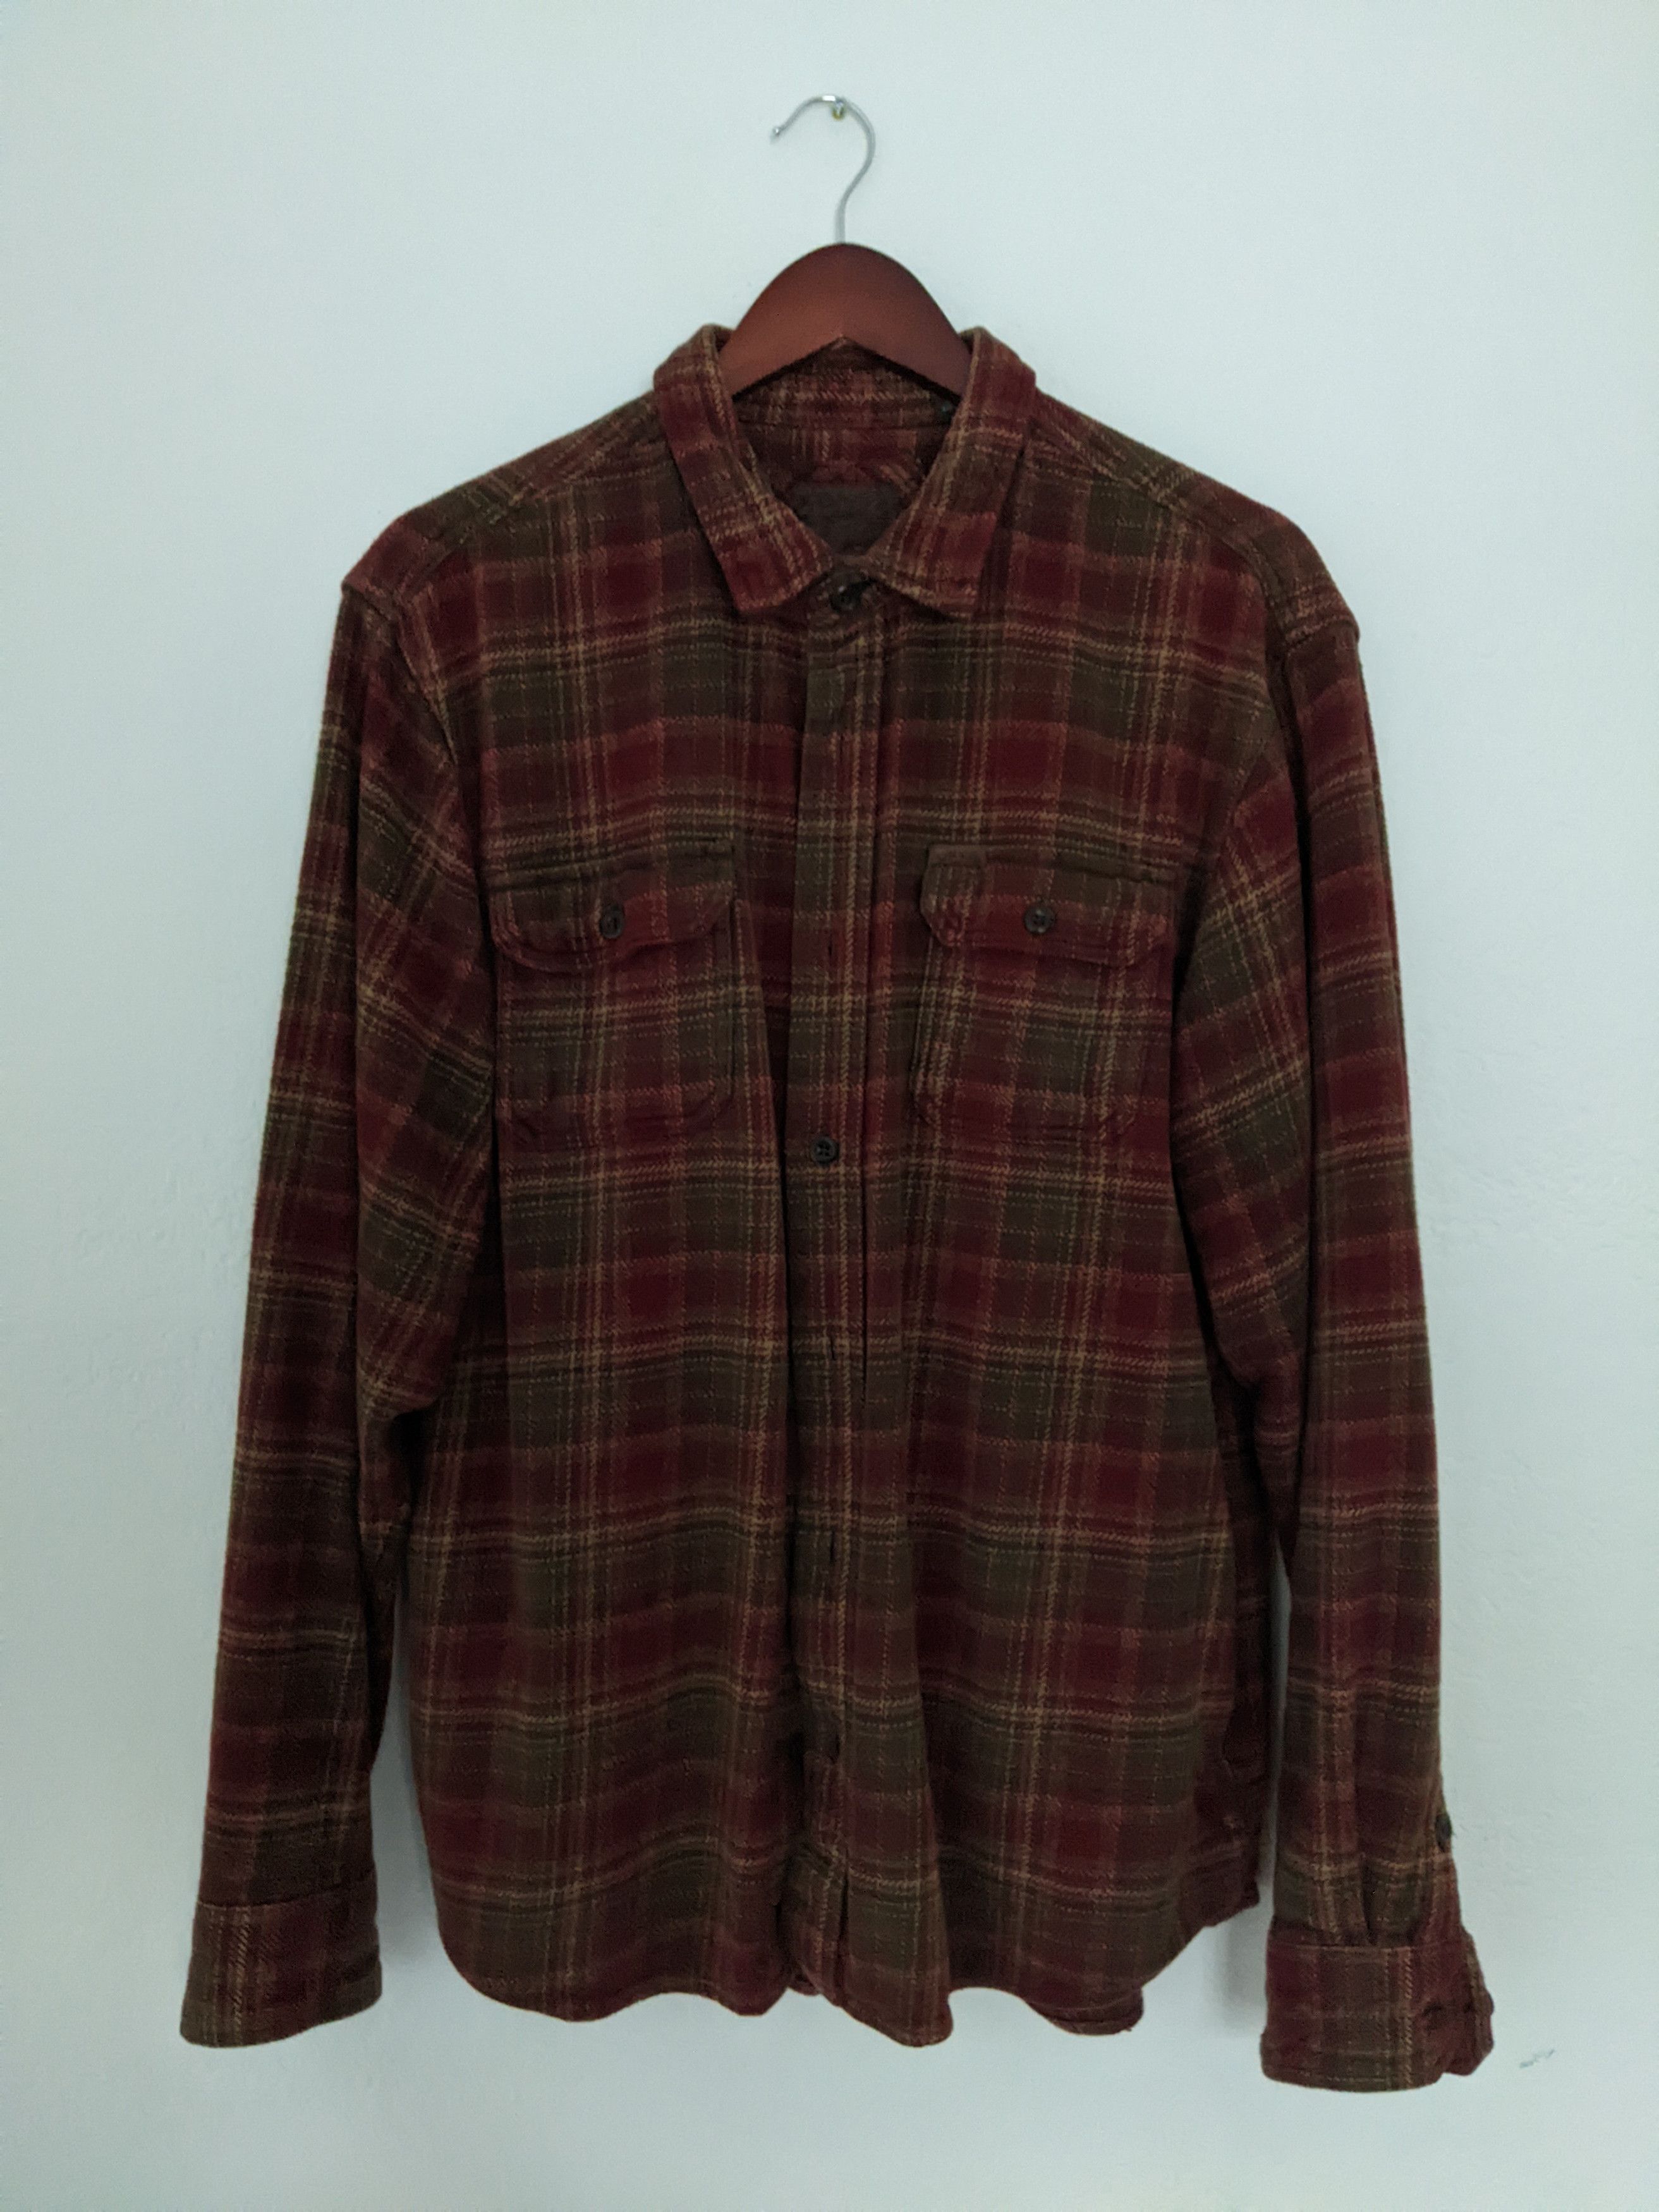 Vintage Vintage Orvis Flannel Shirt | Grailed